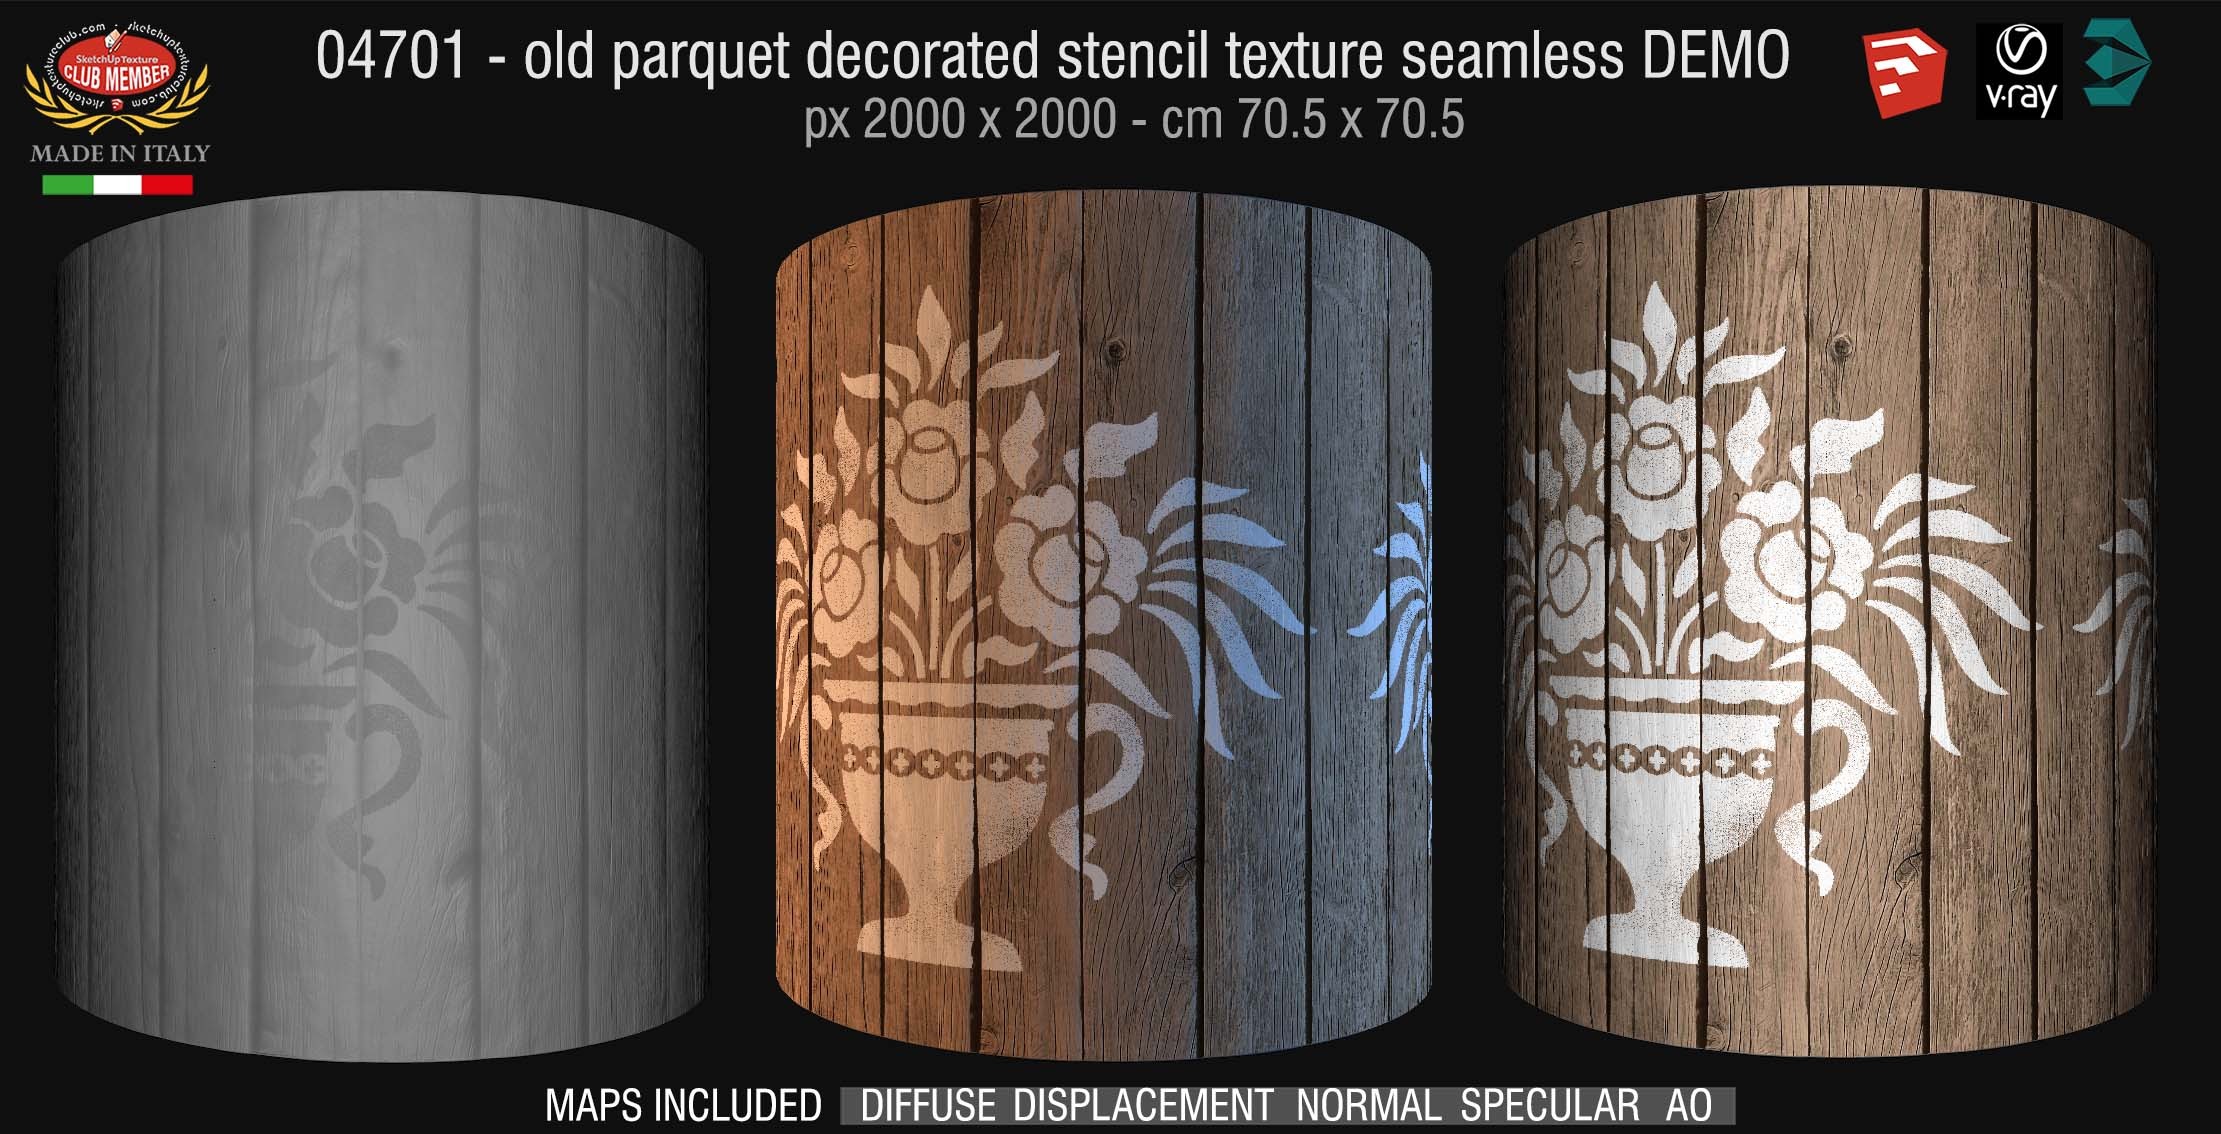 04701 HR Parquet decorated stencil texture seamless + maps DEMO